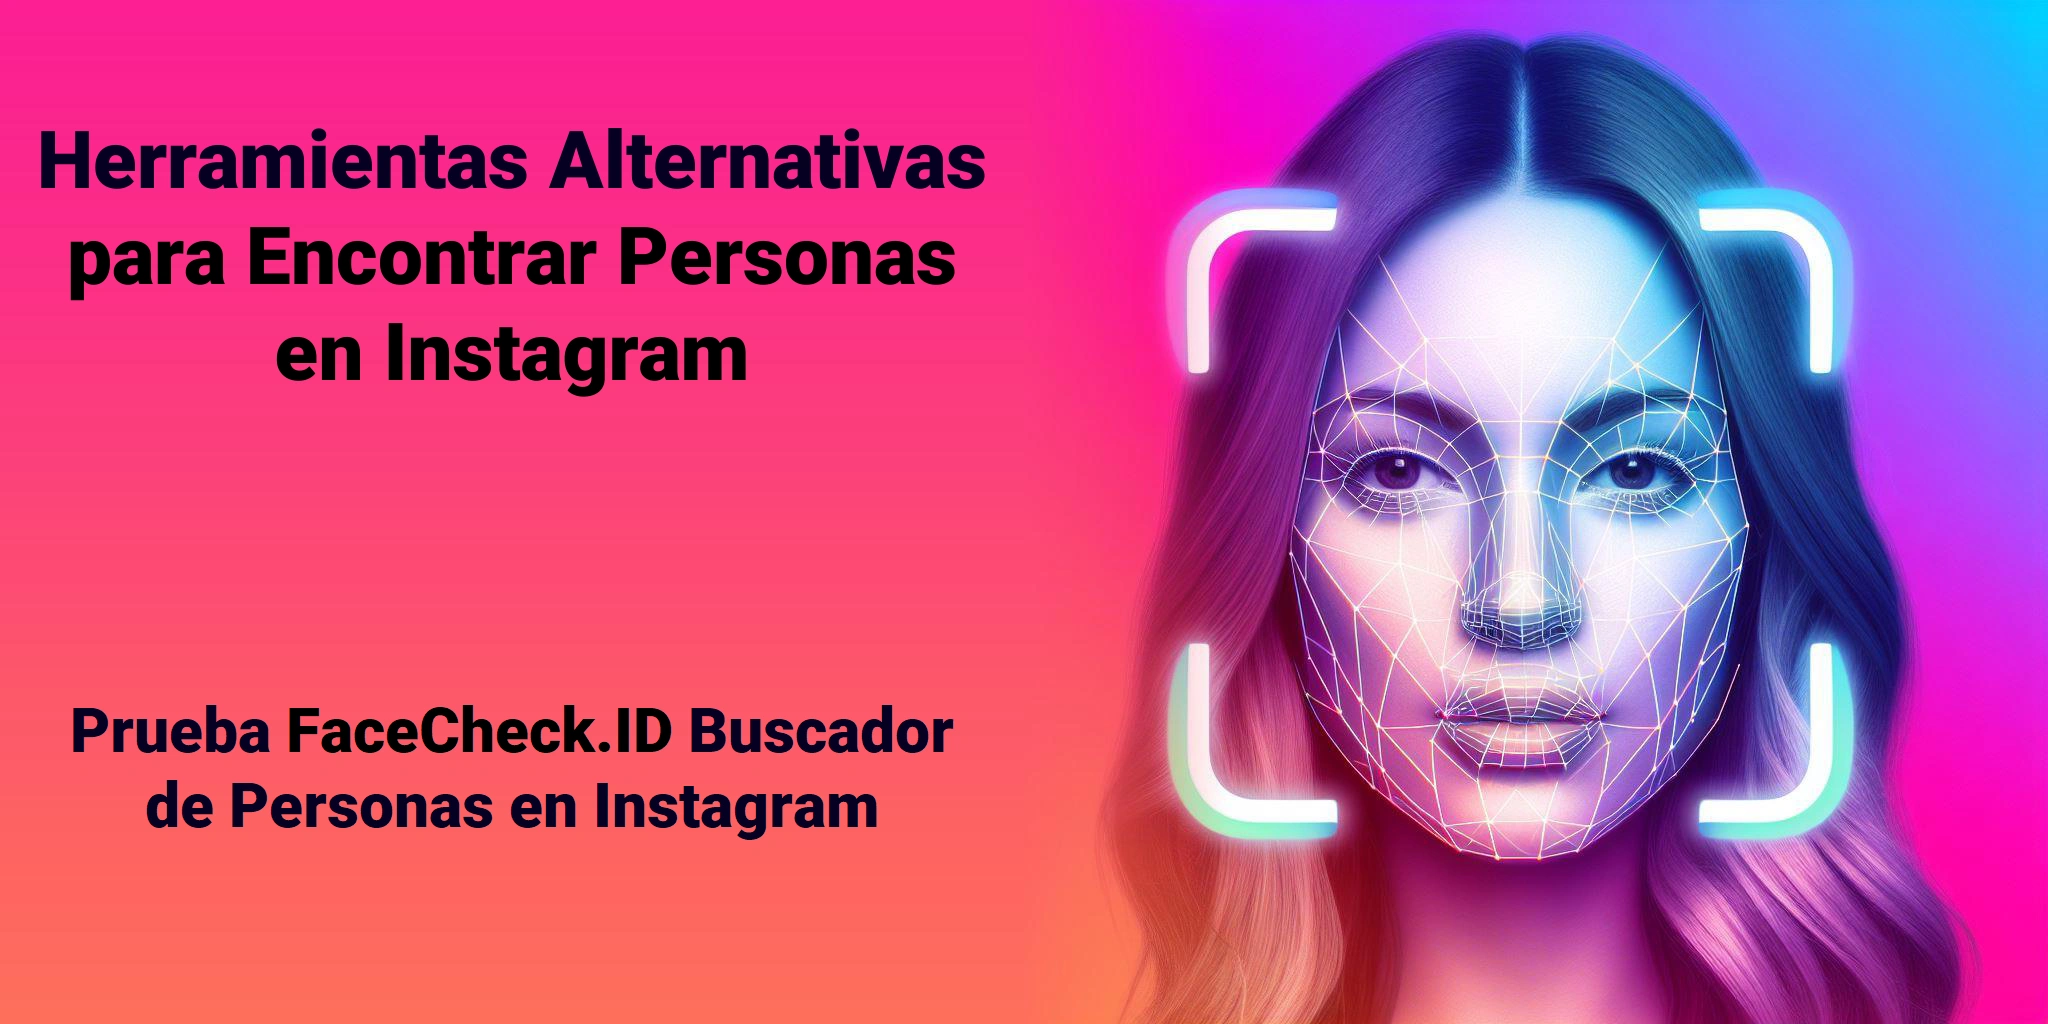 Herramientas Alternativas para Encontrar Personas en Instagram Prueba FaceCheck.ID Buscador de Personas en Instagram